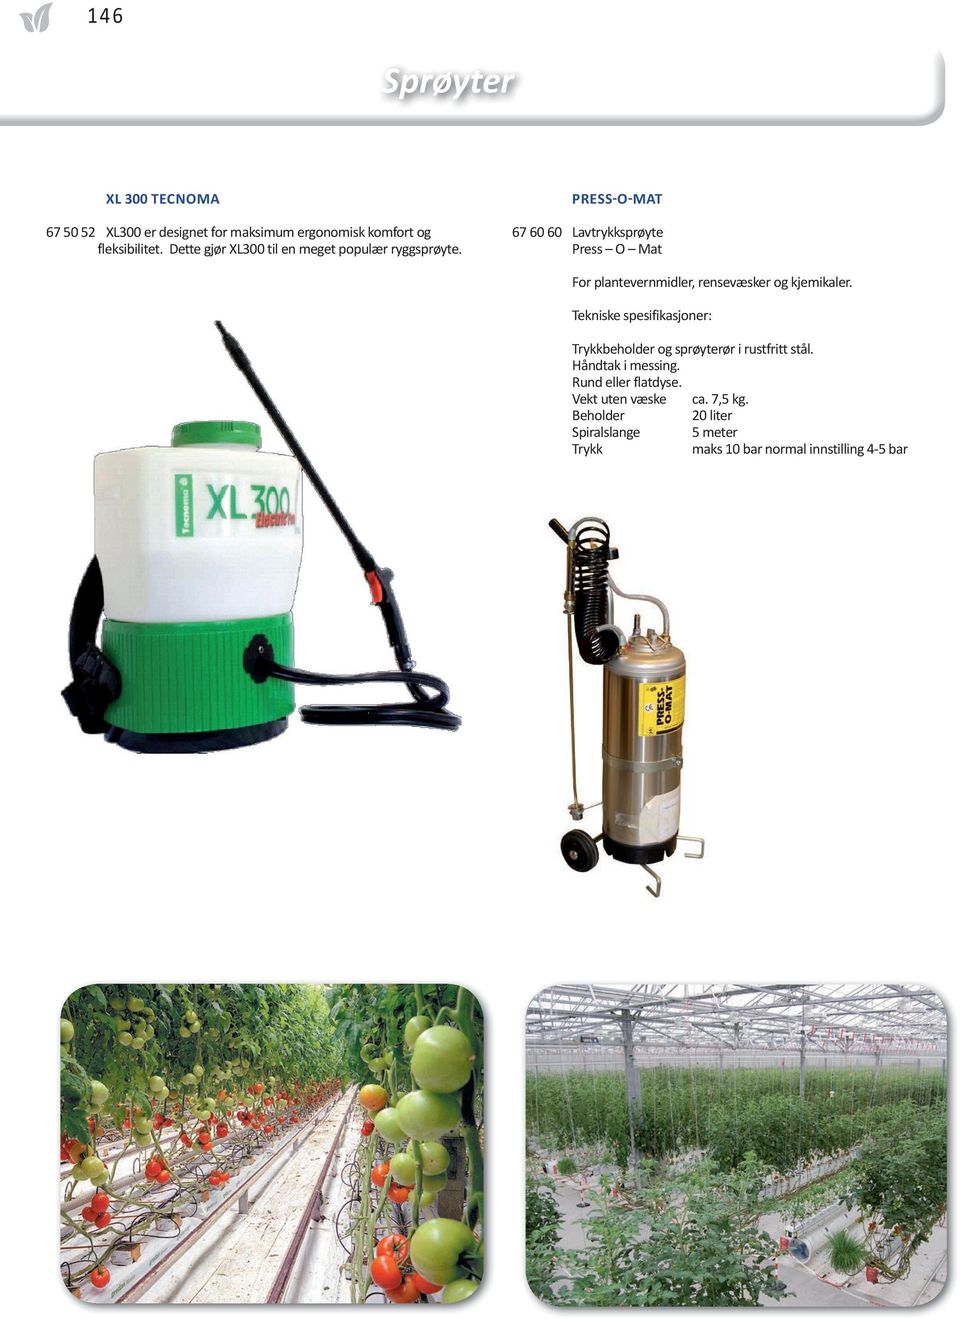 PRESS-O-MAT 67 60 60 Lavtrykksprøyte Press O Mat For plantevernmidler, rensevæsker og kjemikaler.